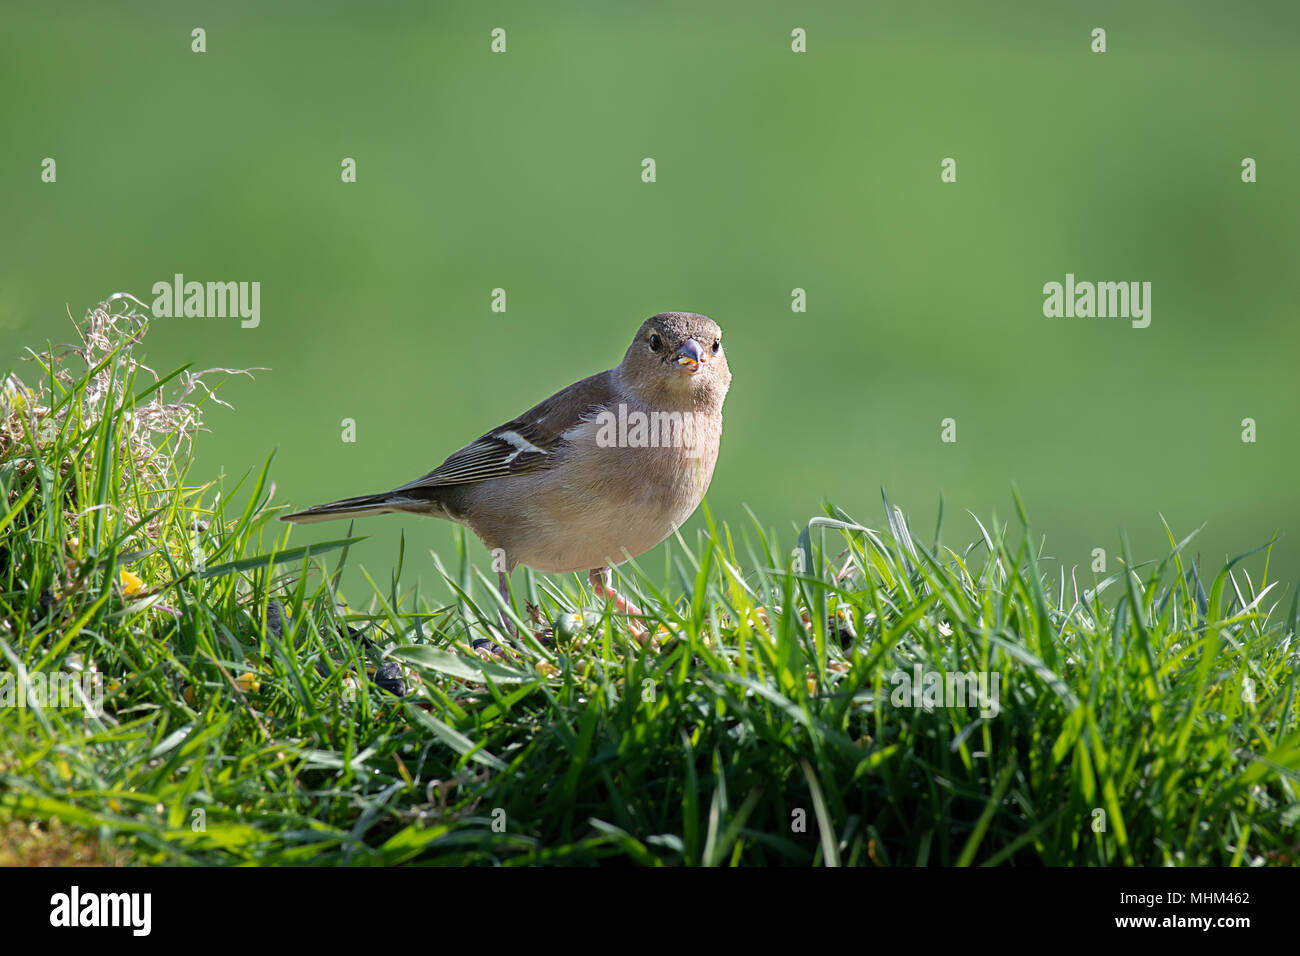 Eine weibliche Buchfink sitzt auf der Spitze eines Gras Bank essen Samen und starrte direkt in die Kamera Linse gehockt Stockfoto